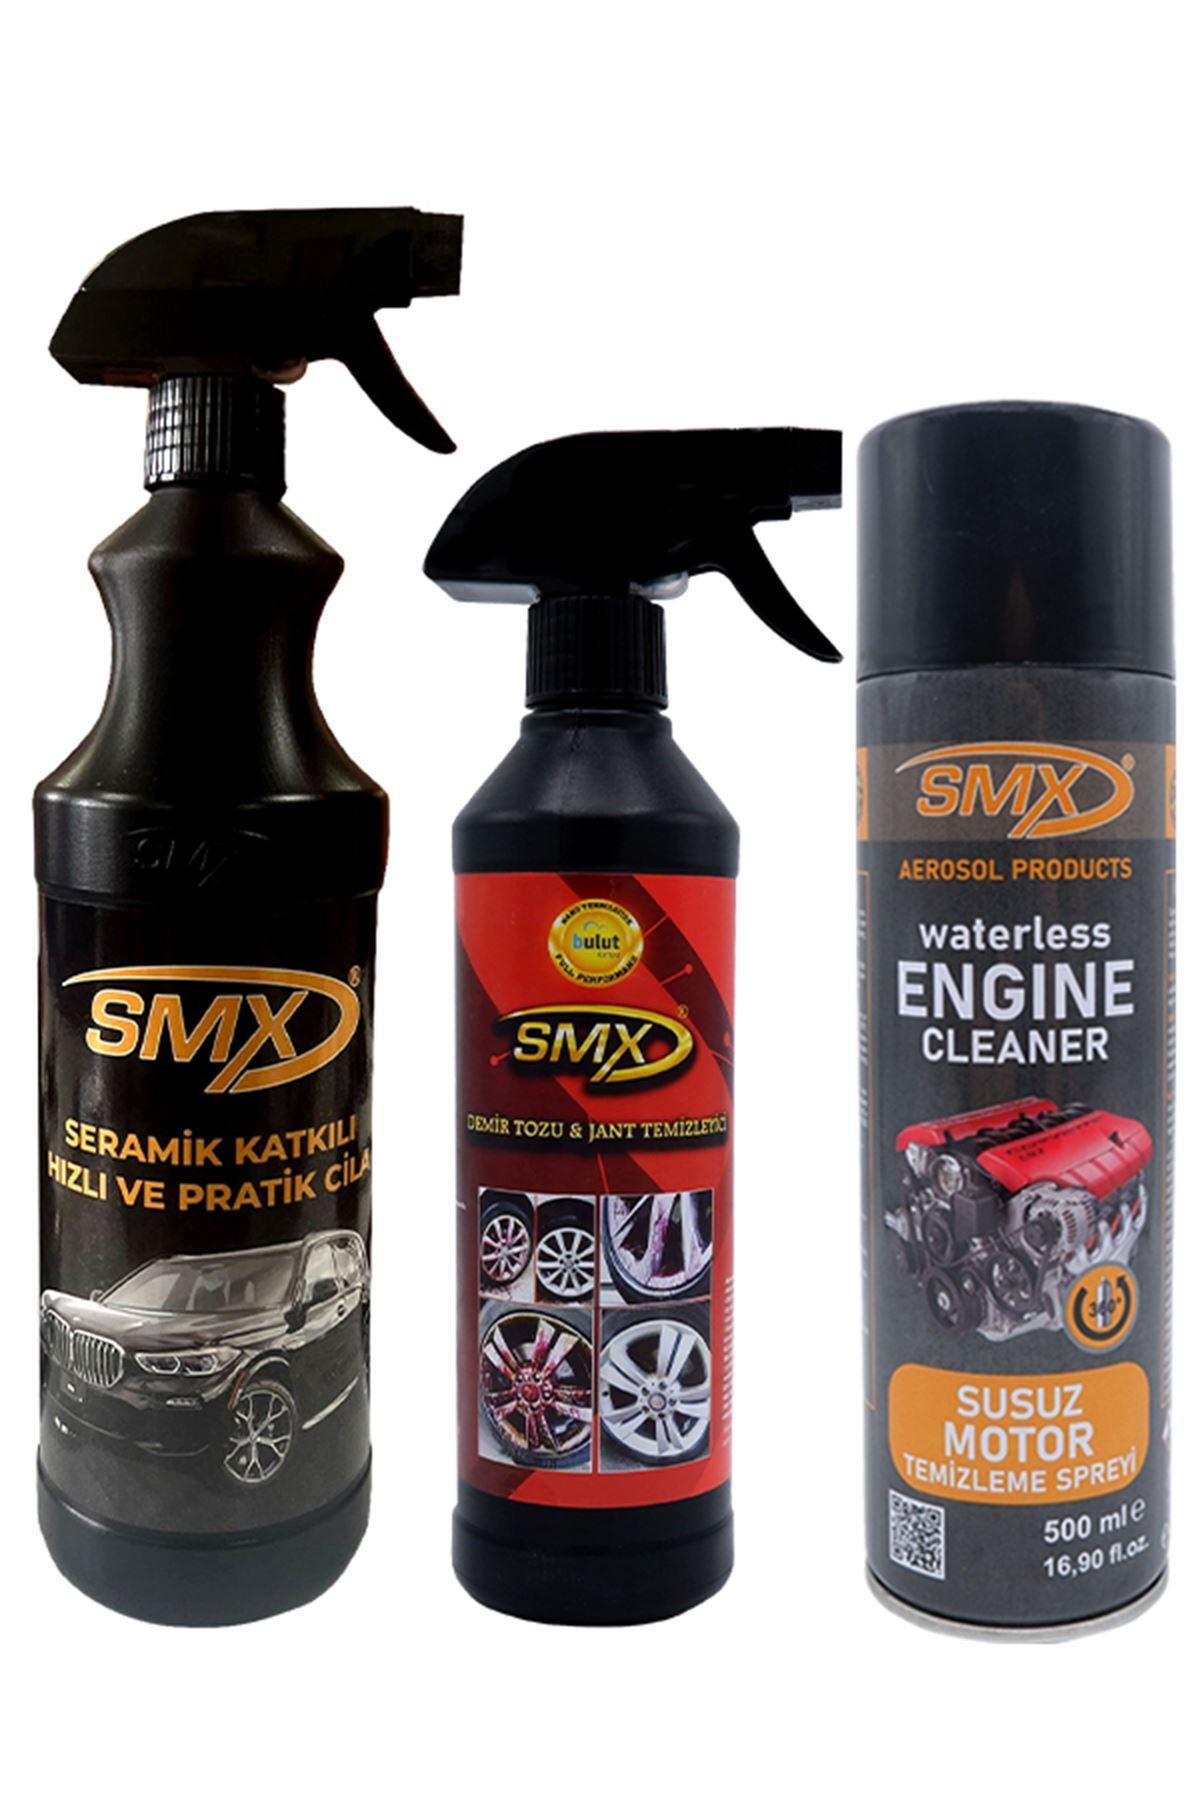 SMX Susuz Motor Temizleme - Seramik Katkılı Hızlı Cila - Demir Tozu Jant Temizleyici